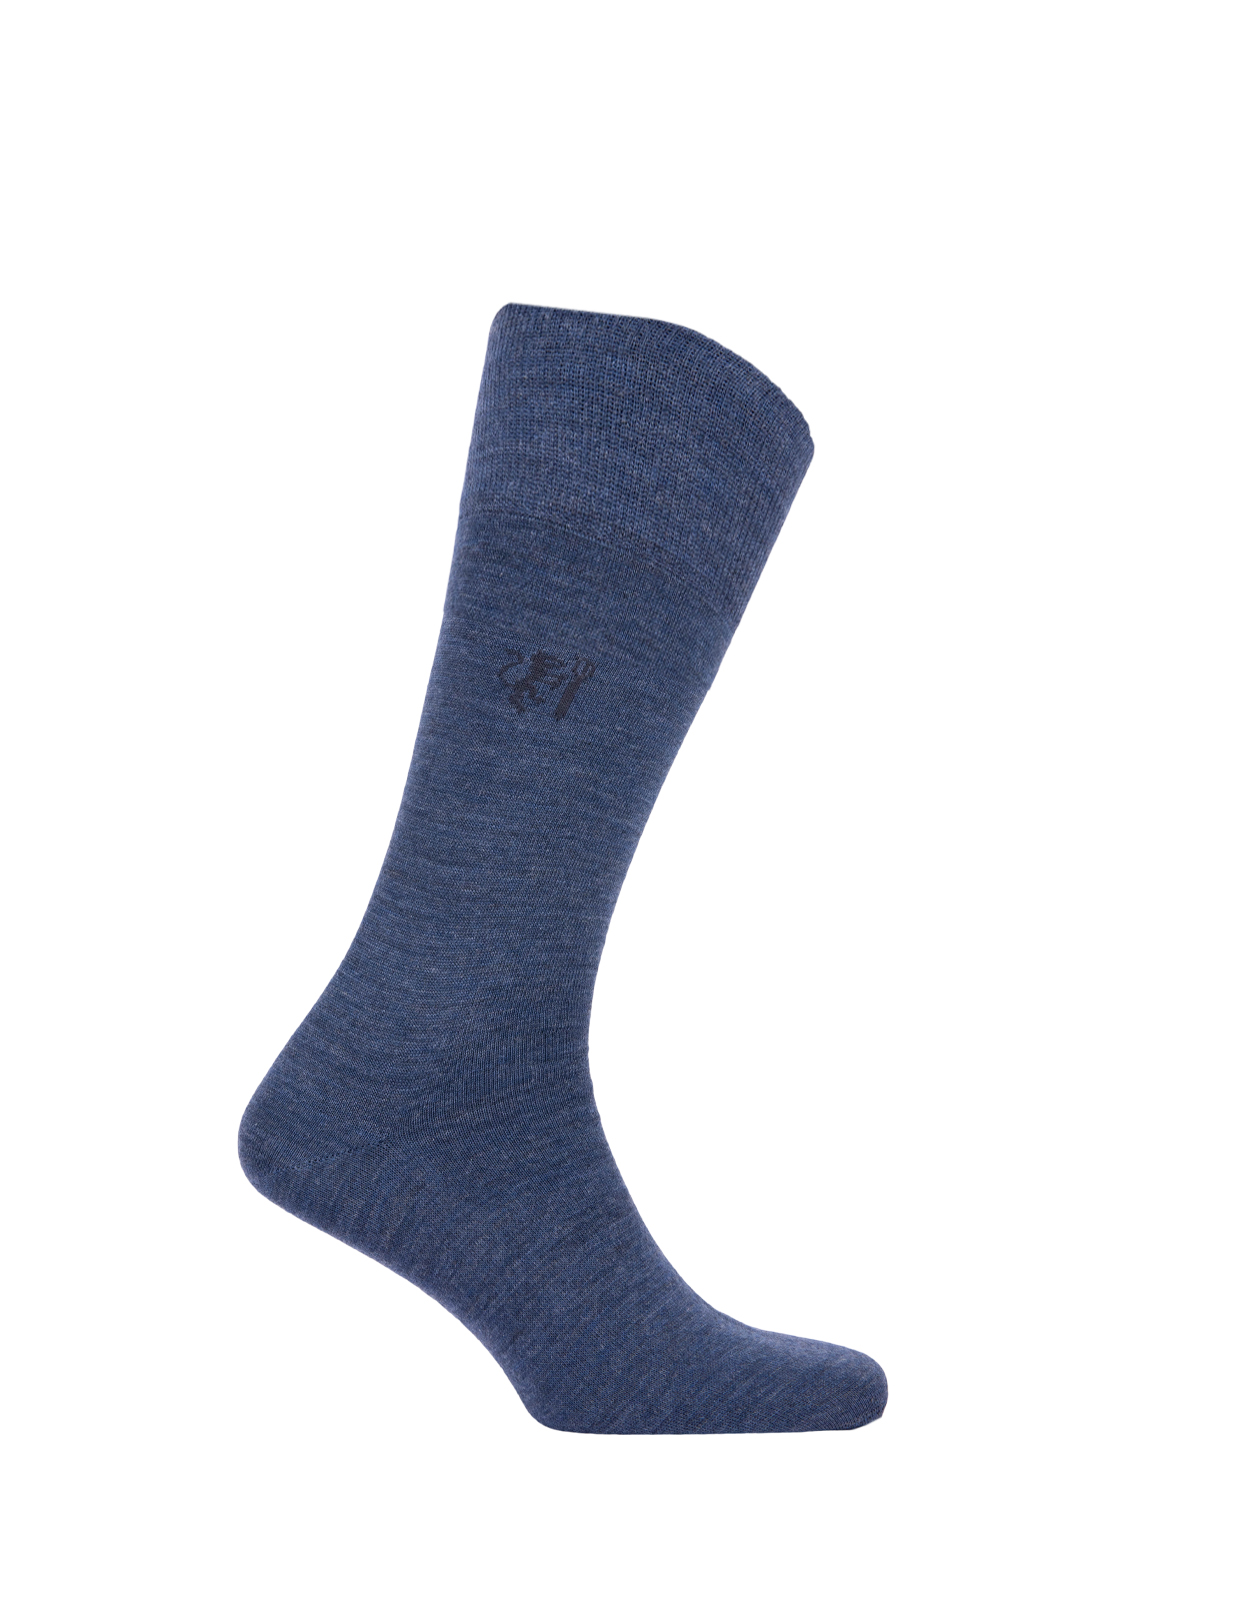 Merino Blended Socks Denim Stl 40-43